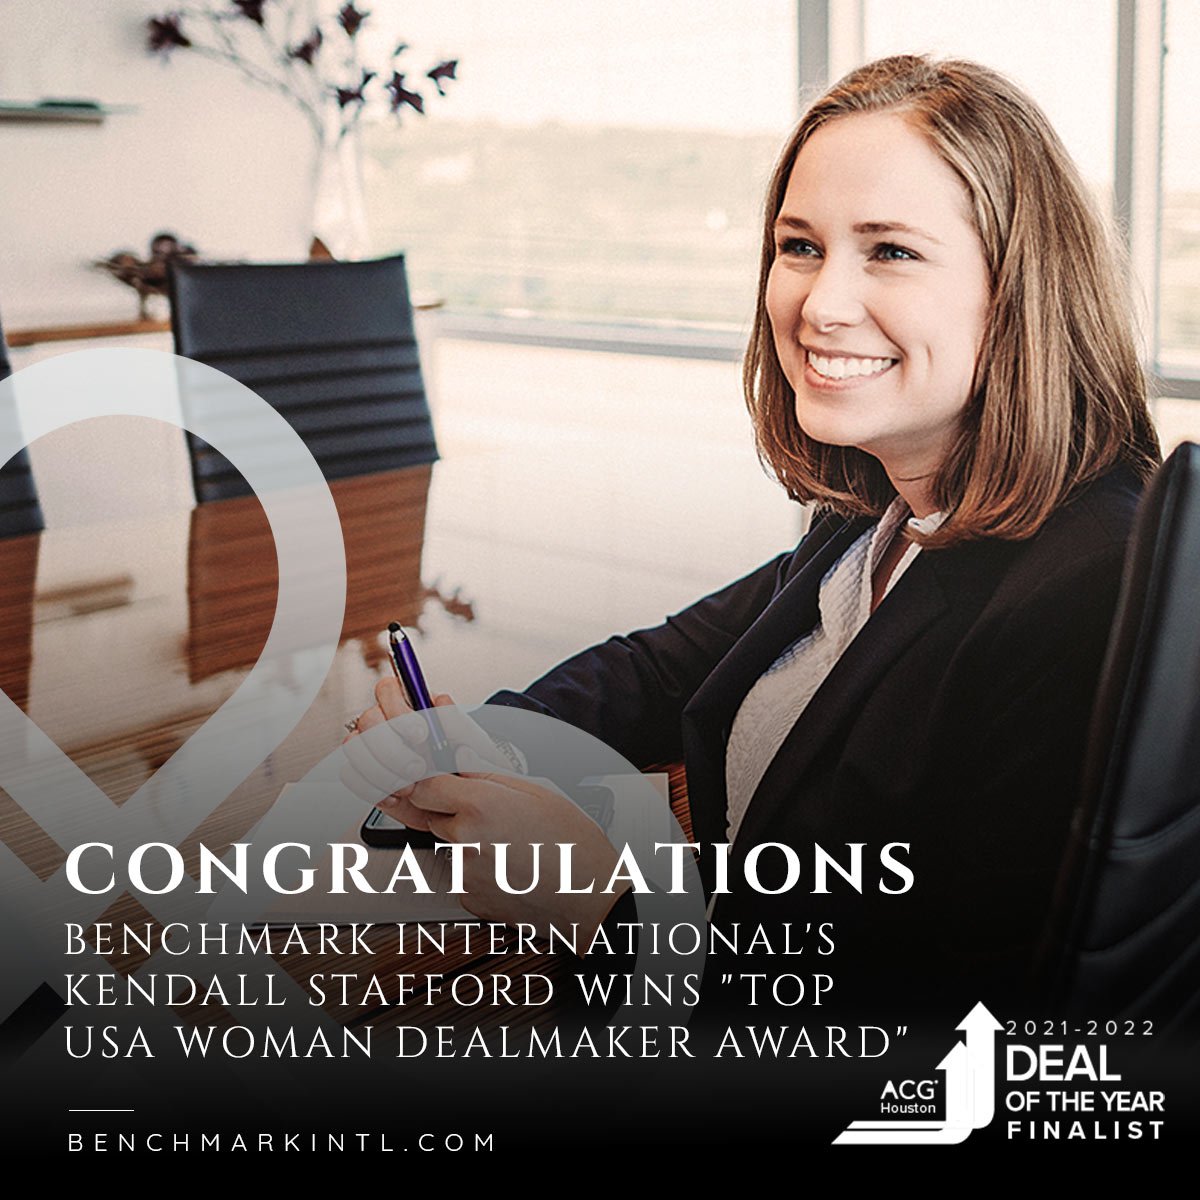 Benchmark-Internationals-Kendall-Stafford-Wins-Top-USA-Woman-Deal-Maker-Award_Social